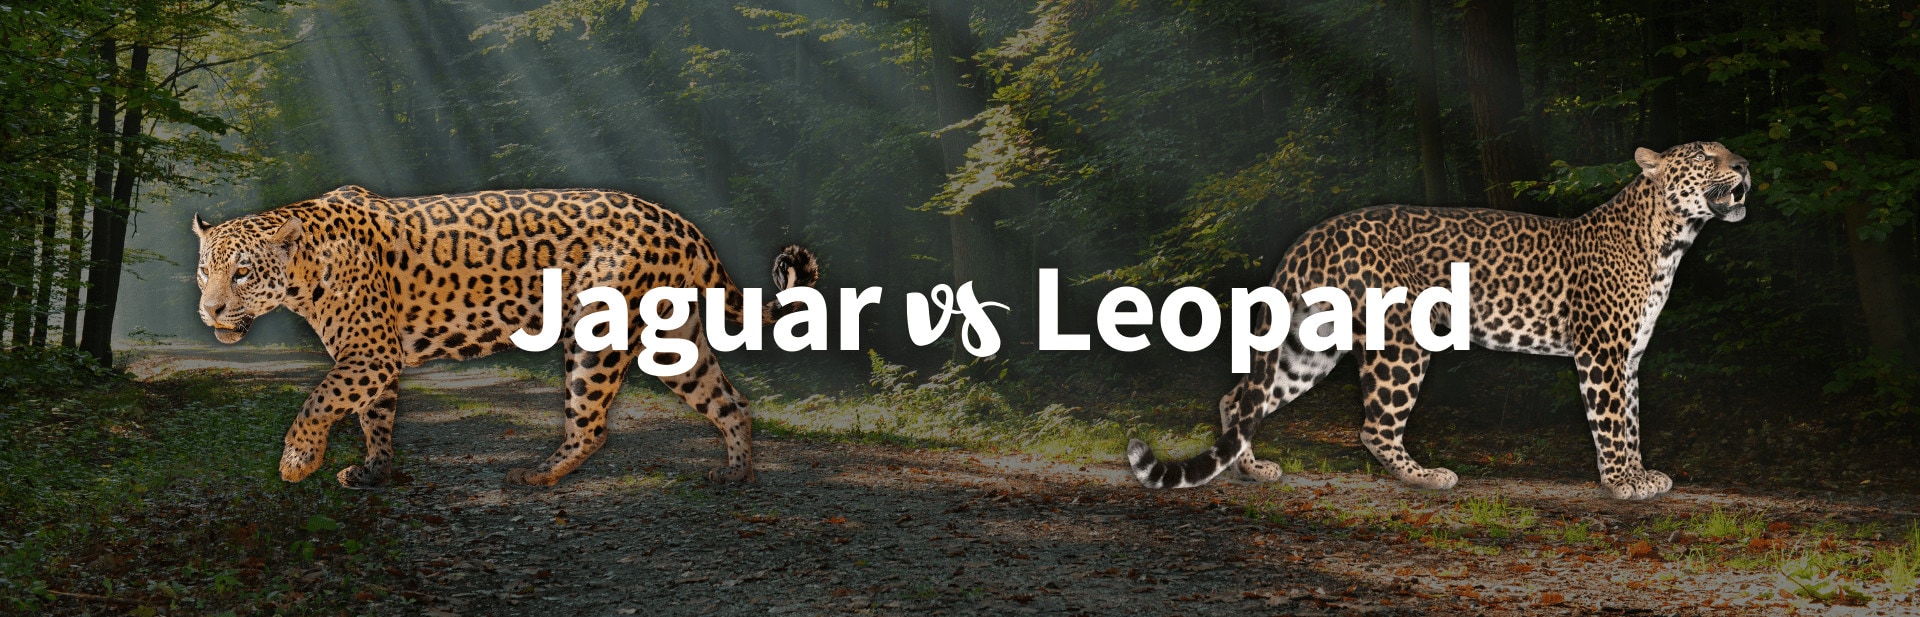 Jaguar vs Leopard: Top 10 Differences